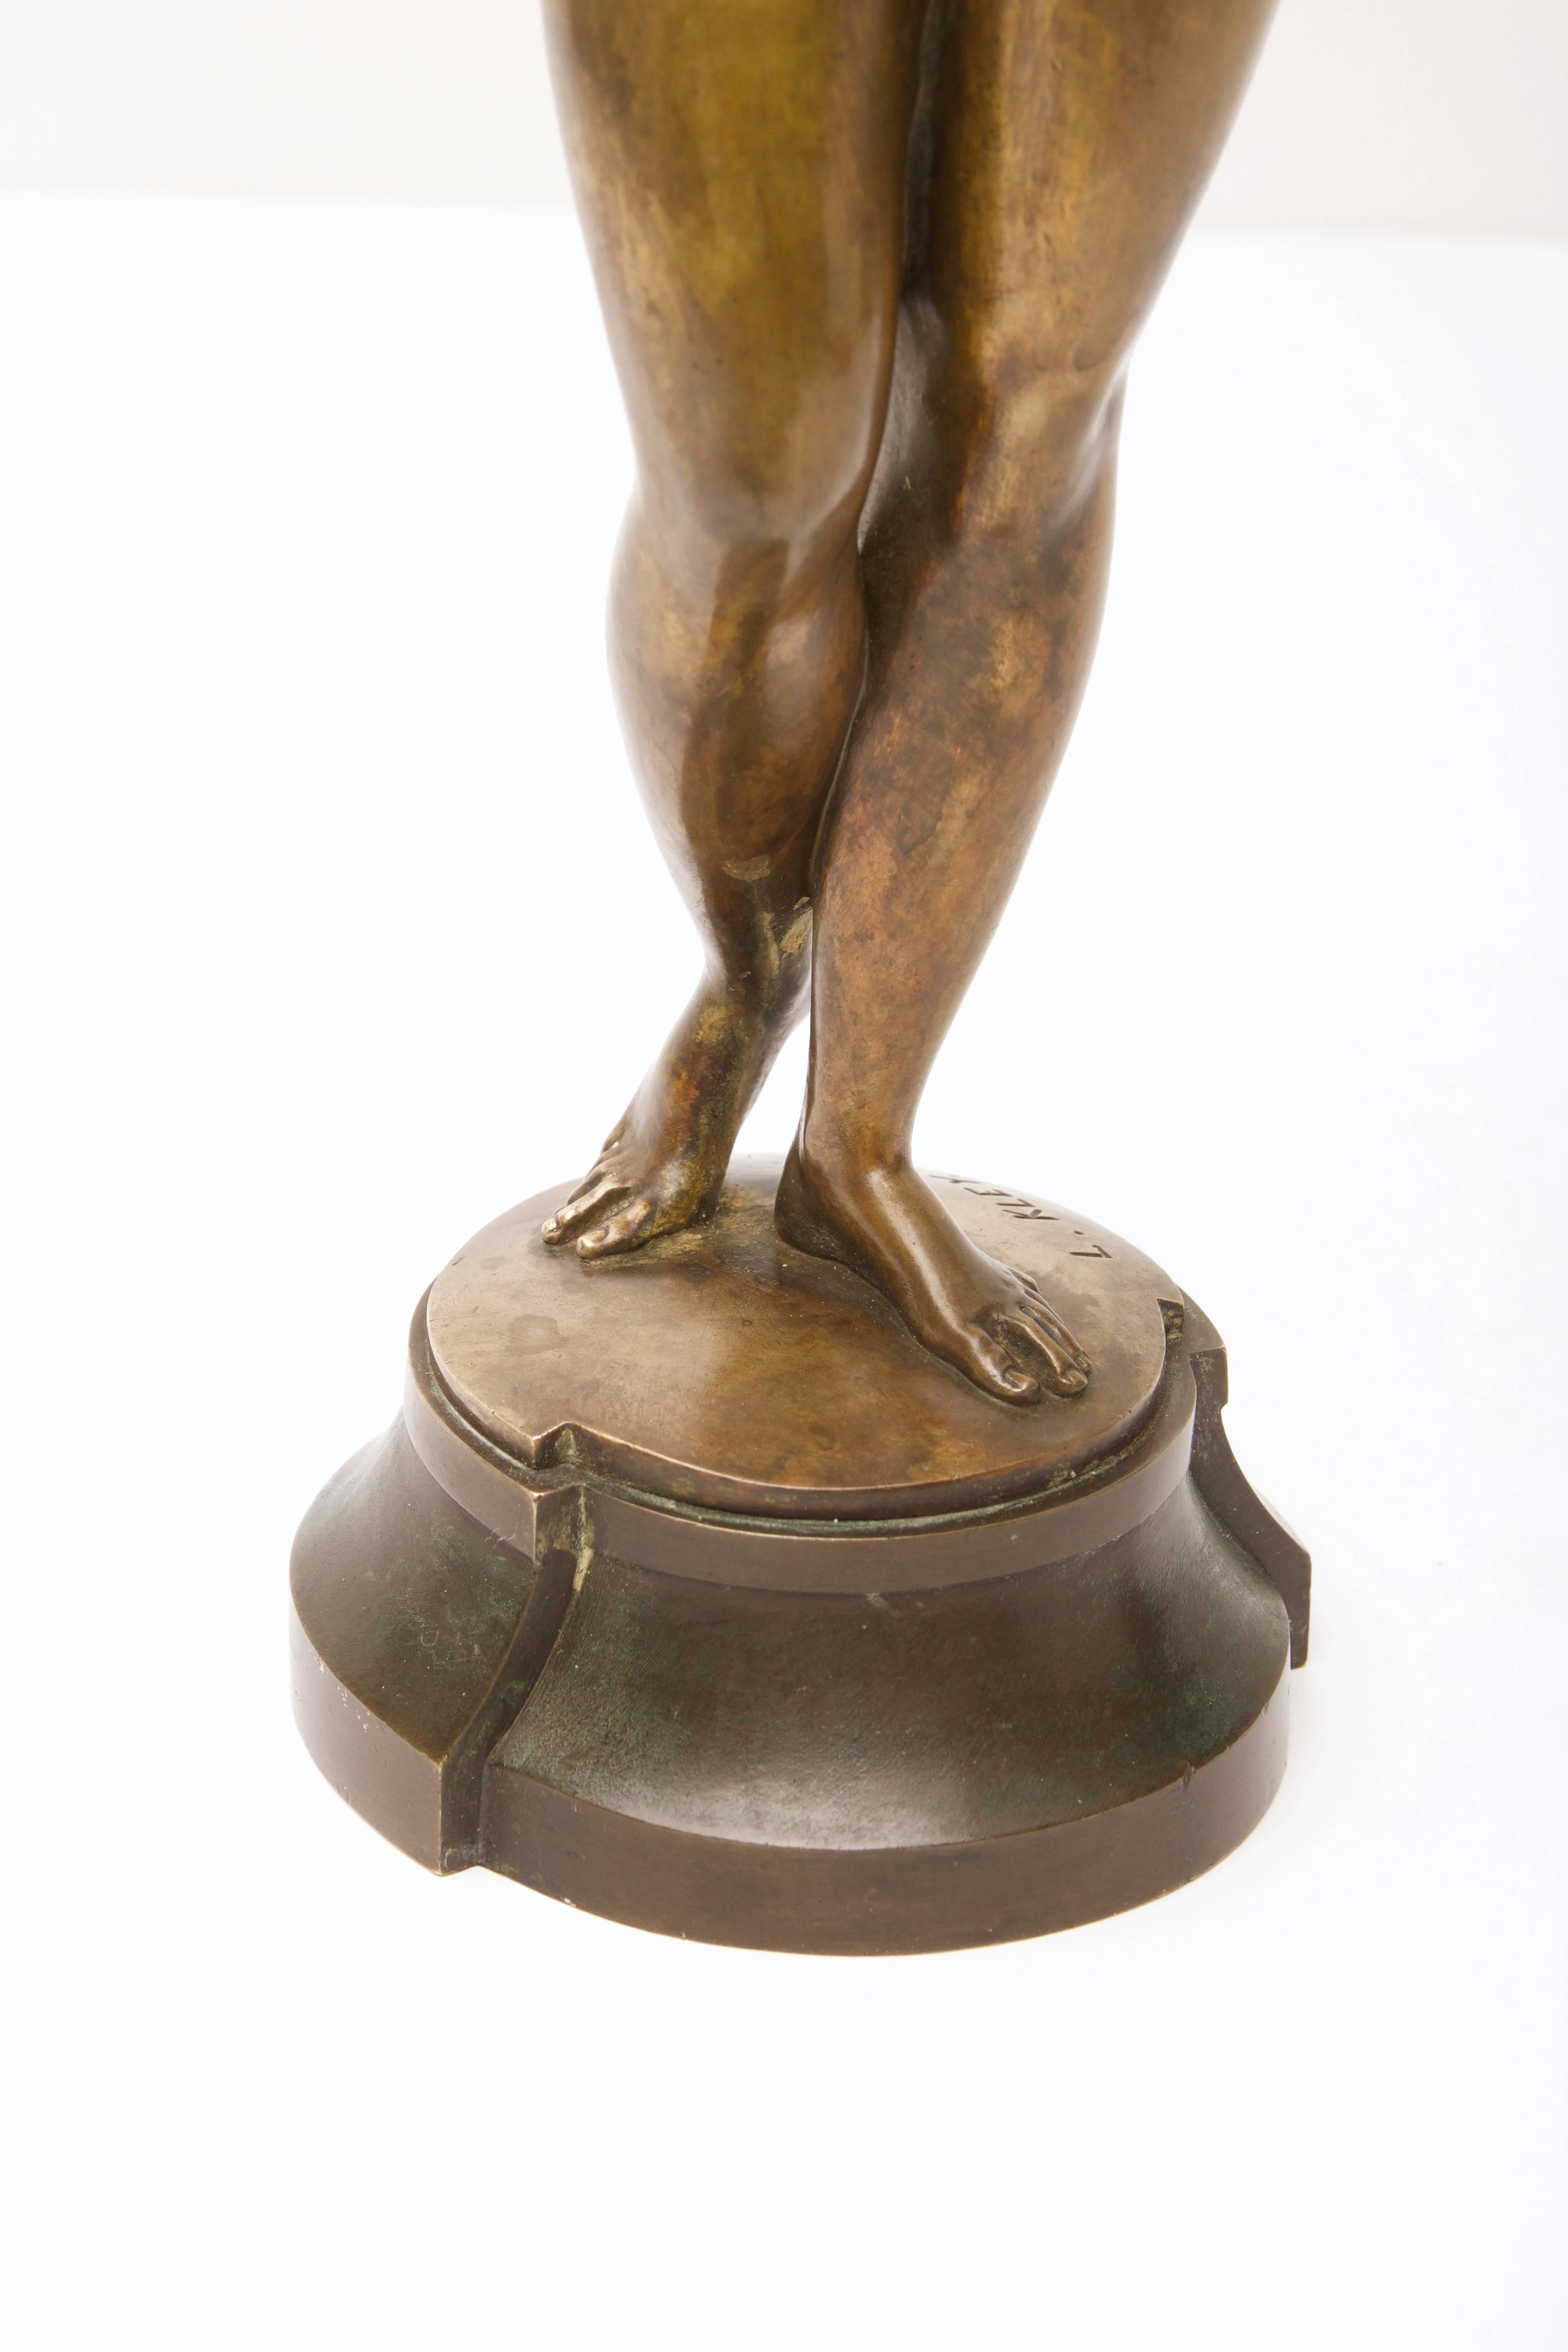 Cast Epoch Art Nouveau Bronze Sculpture, Spanish Dancer by Louis Kley